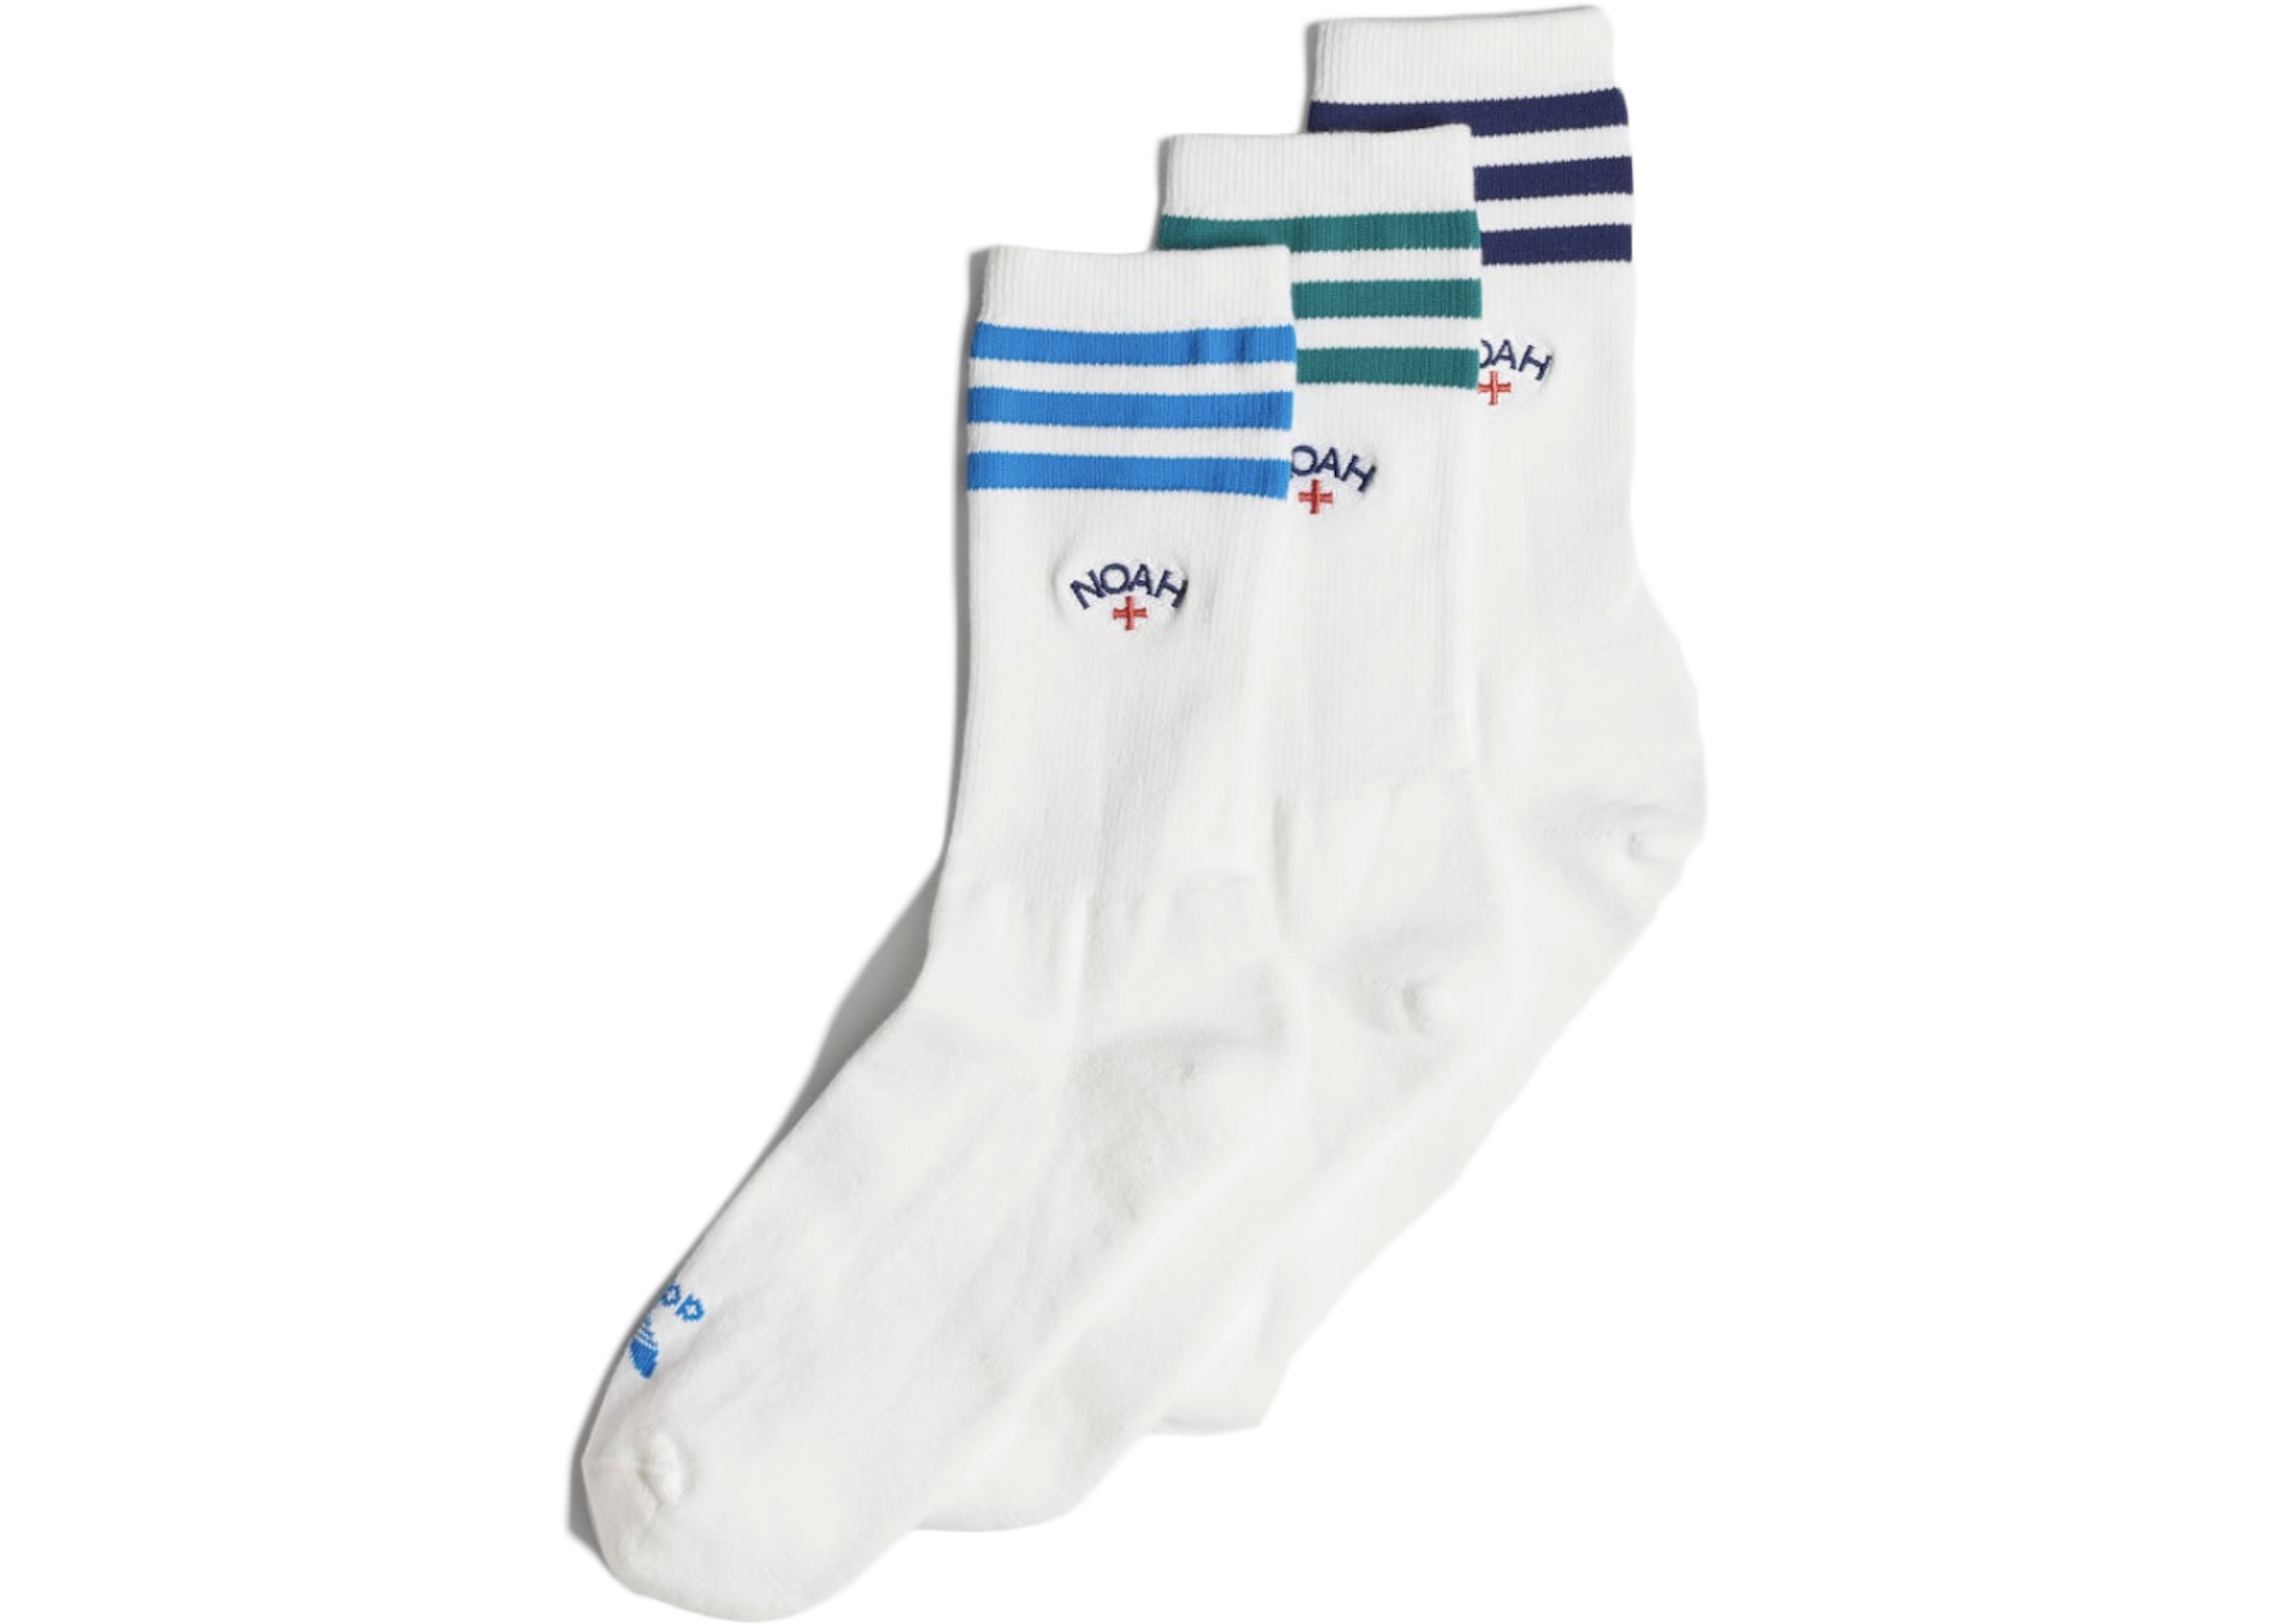 x adidas Originals Crew Socks (3 Pair) White/Multicolor FW20 - US